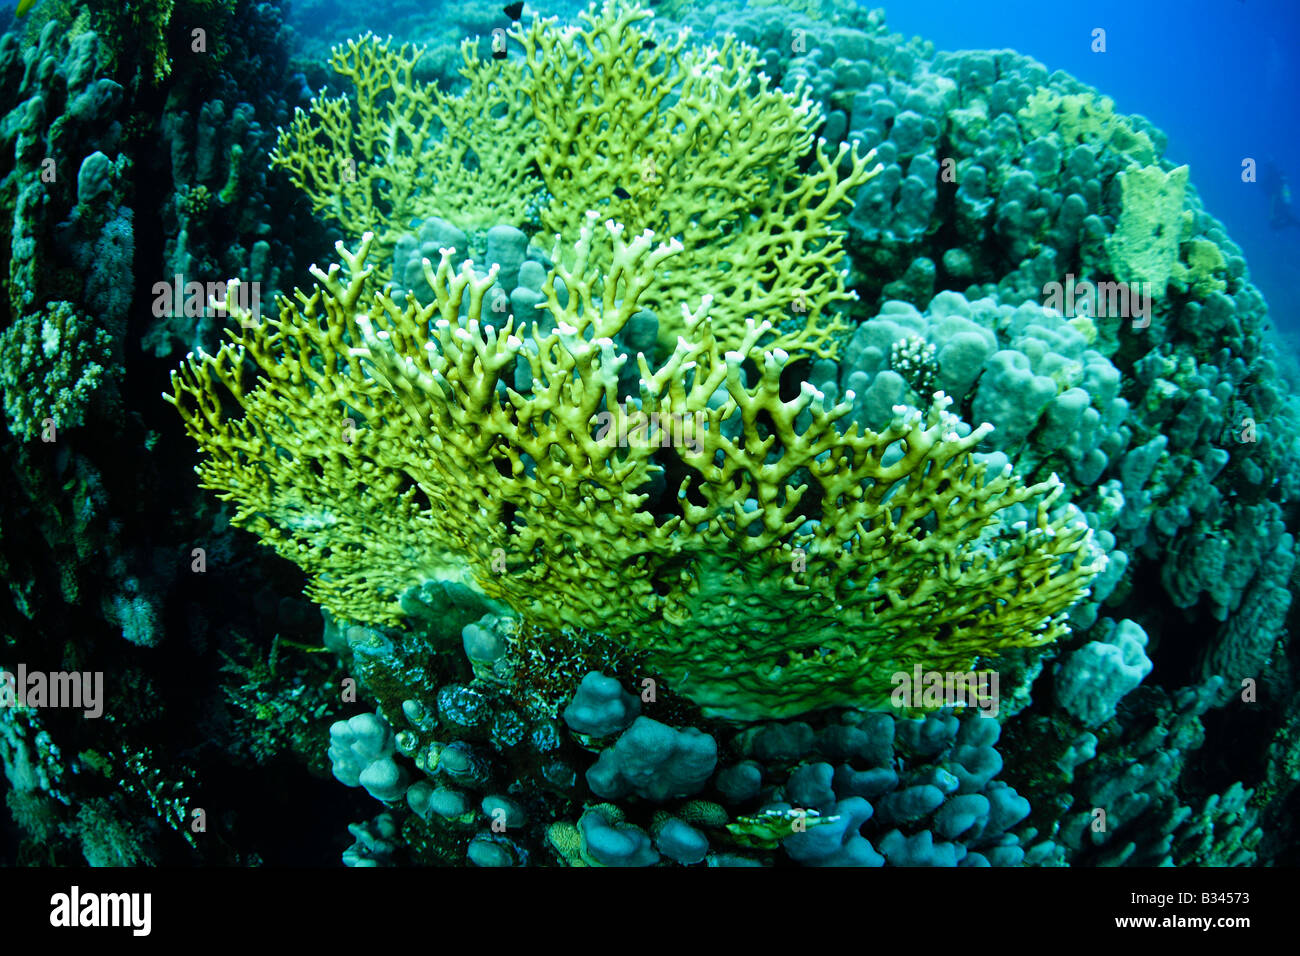 Sea Fan coral, Red Sea, Egypt Stock Photo